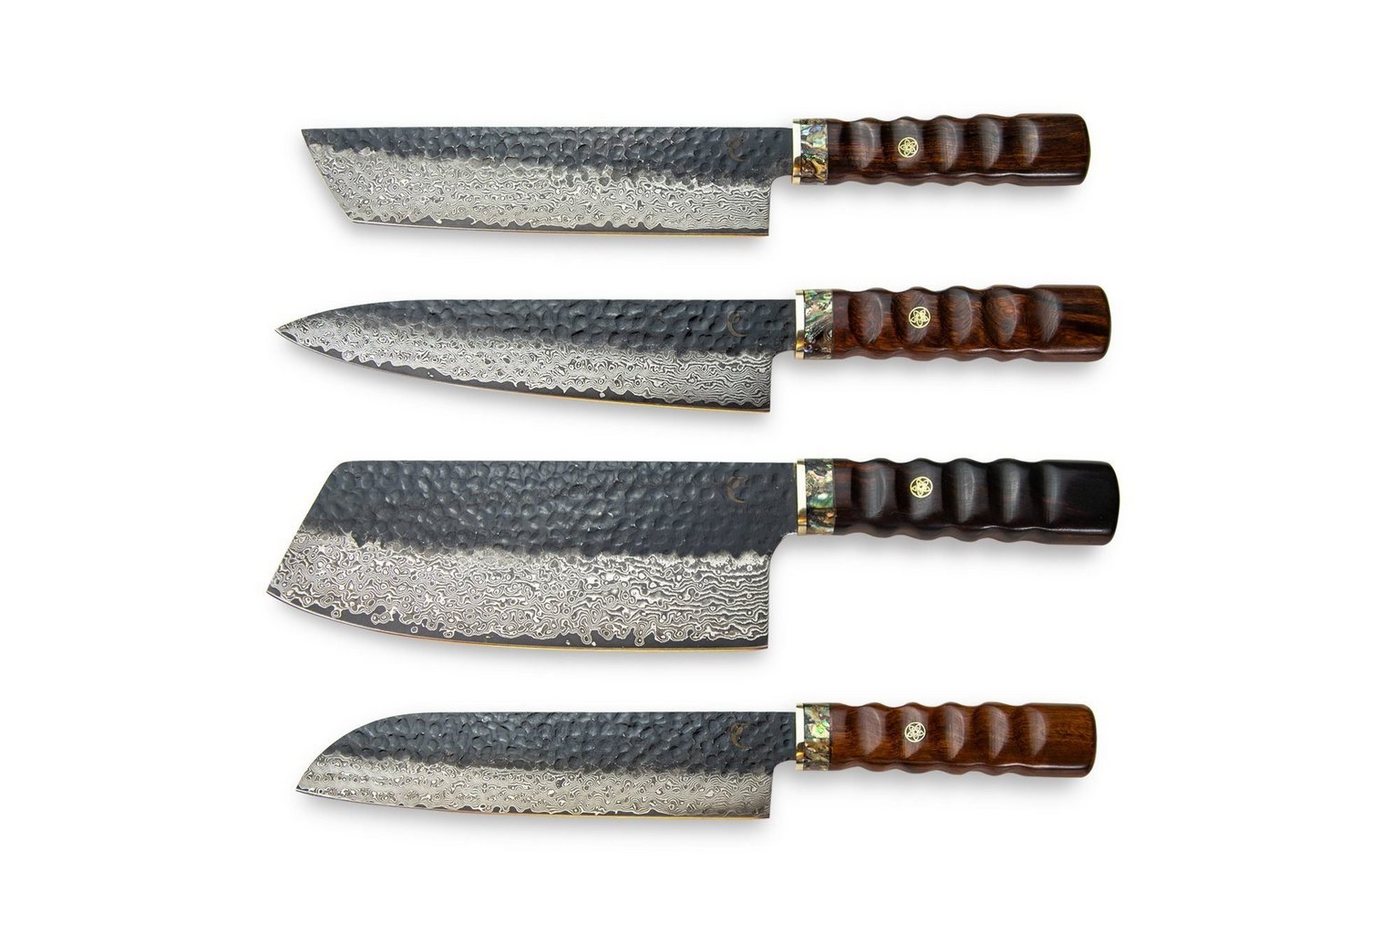 Calisso Messer-Set Aristocratic Line Küchenmesser Damastmesser Messerset (4-tlg), Damastmesser, inkl. hochwertiger Box und Echtheitszertifikat von Calisso